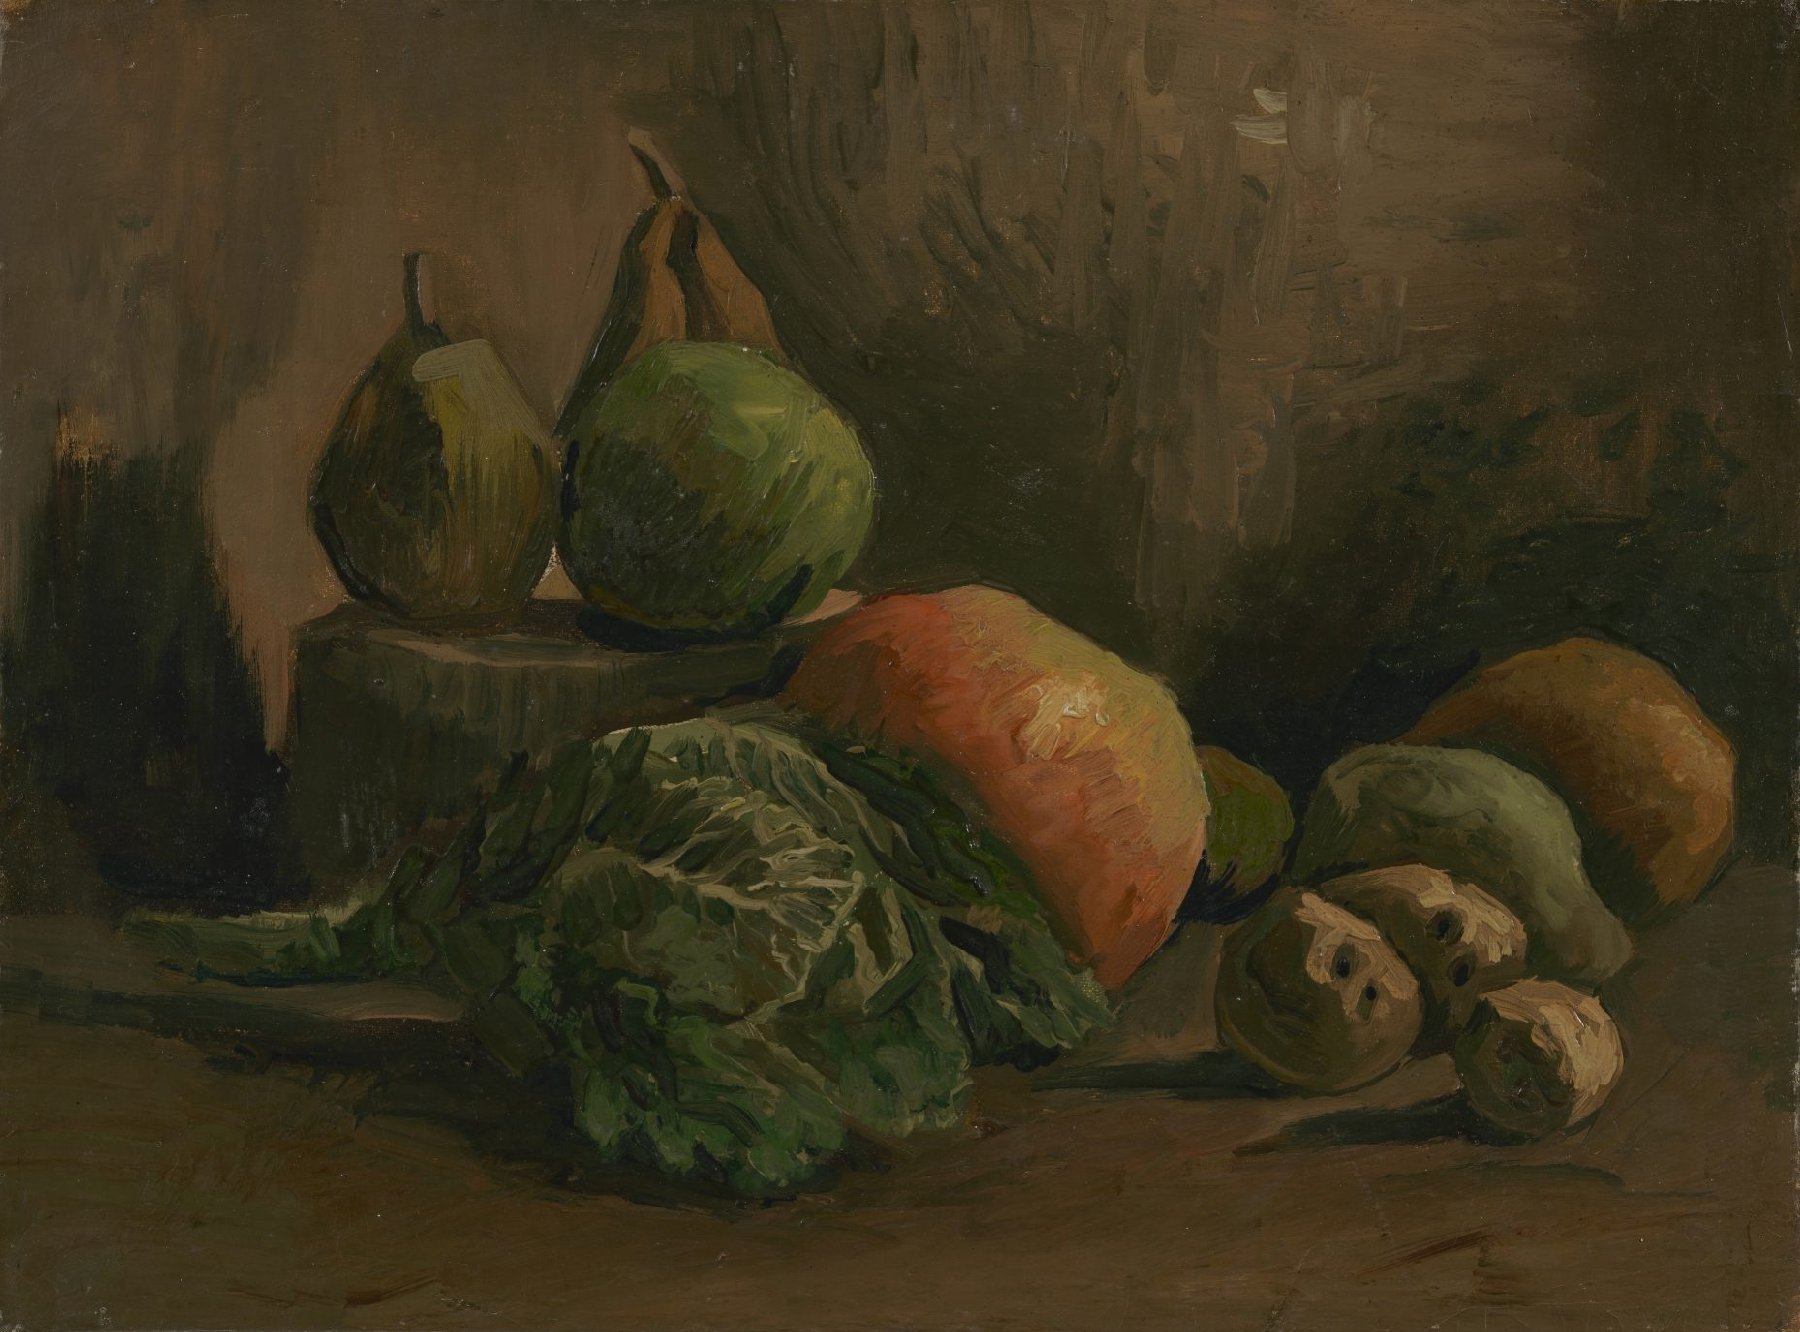 Stilleven met groente en fruit Vincent van Gogh (1853 - 1890), Nuenen, herfst 1884